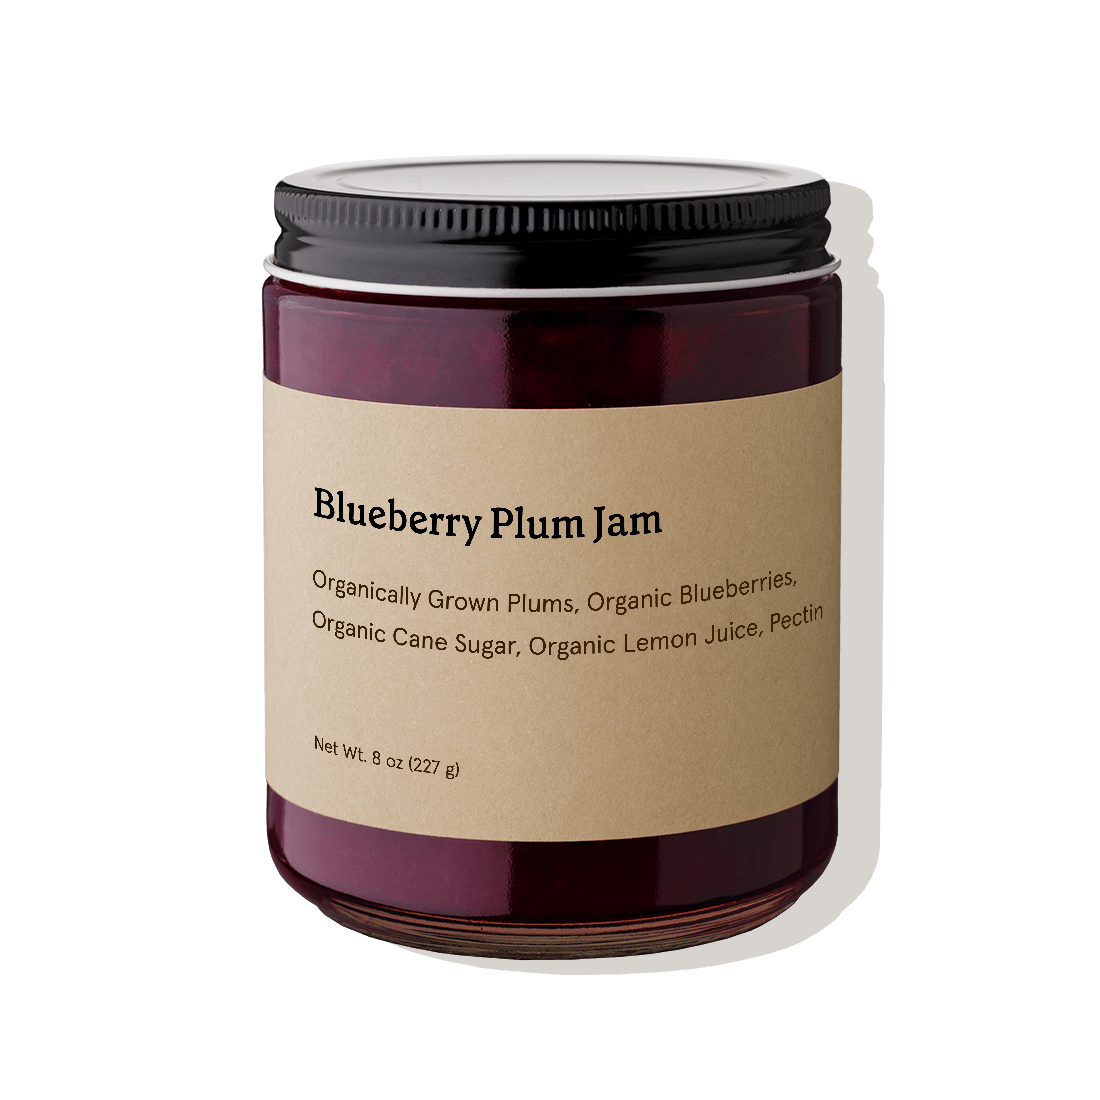 Blueberry Plum Jam